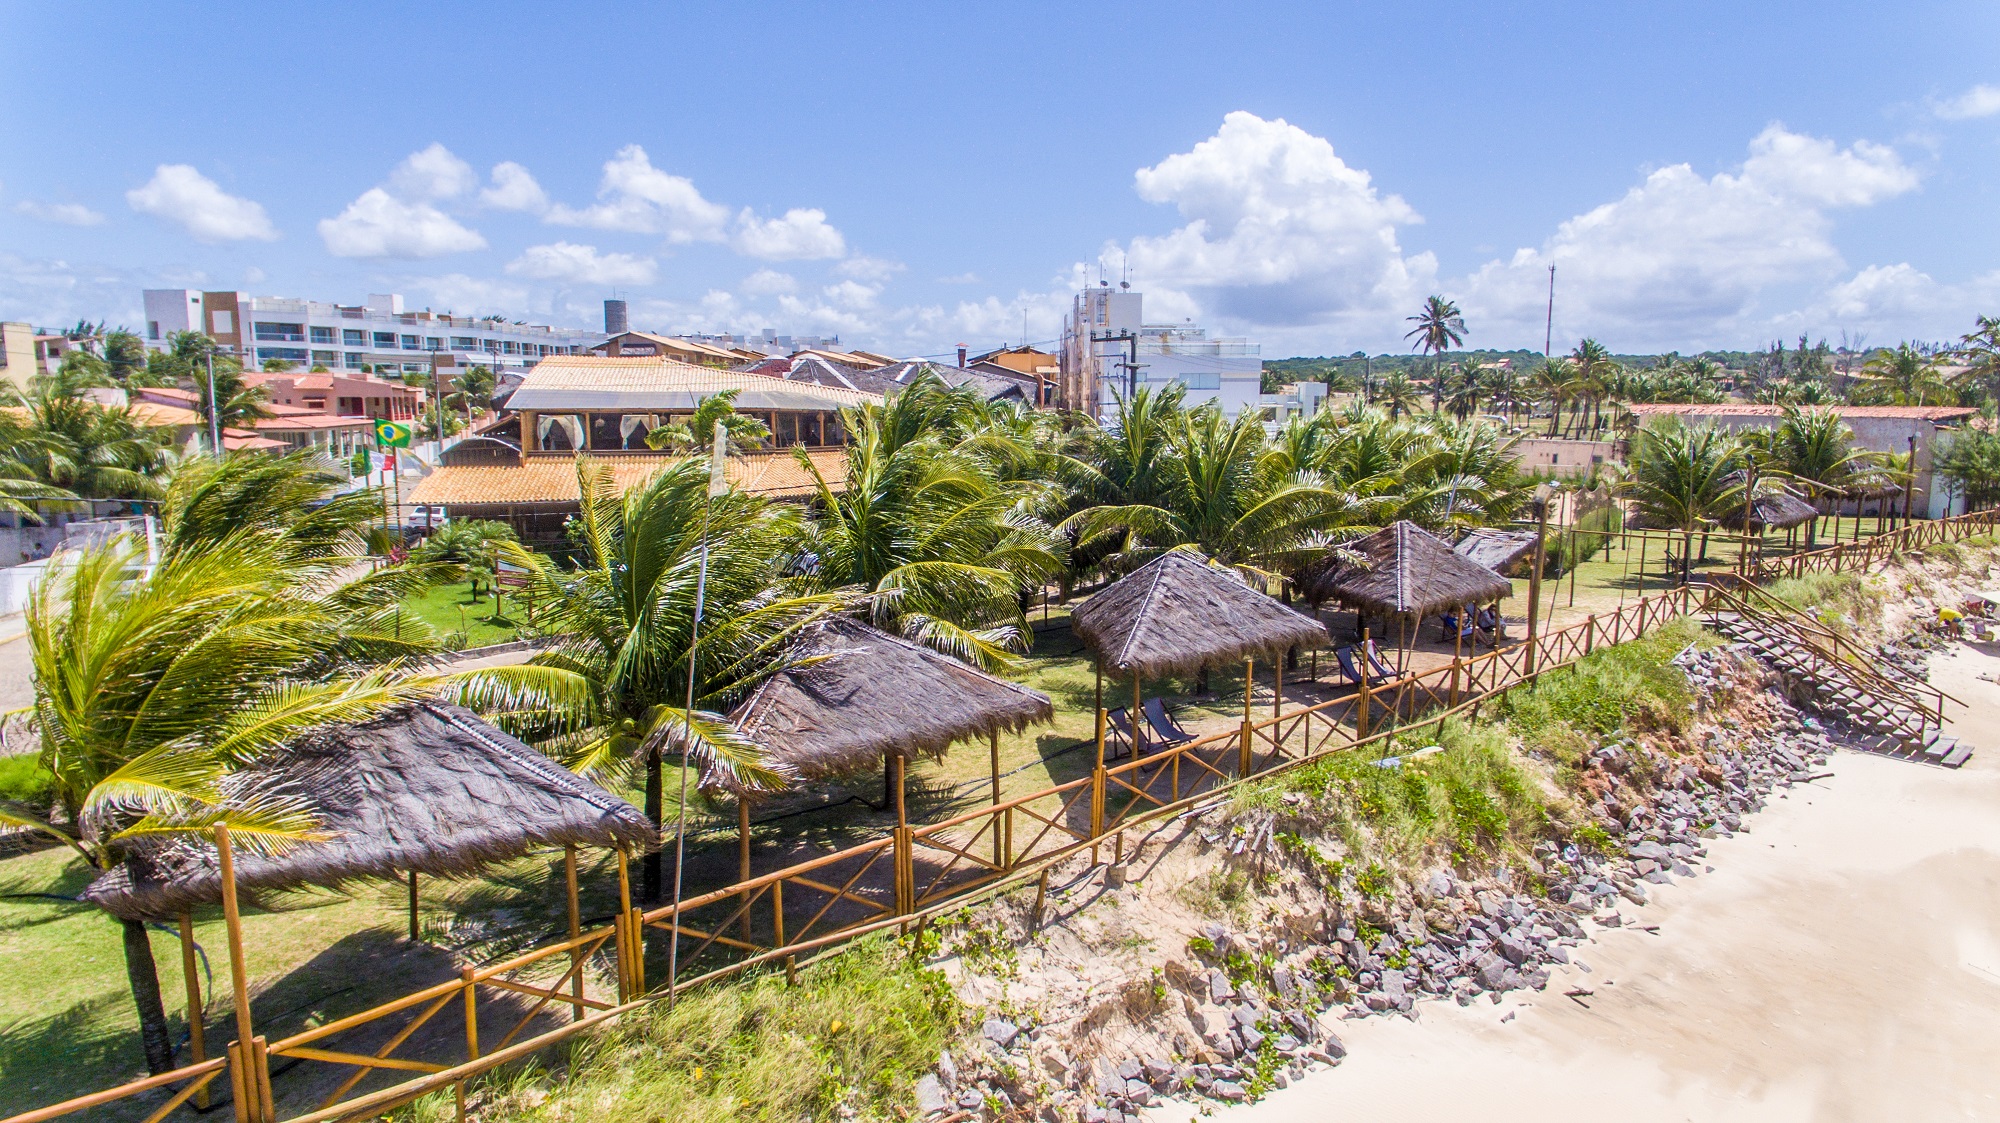 Aproveite o clima de romance à beira-mar no Praia Bonita Resort & Conventions